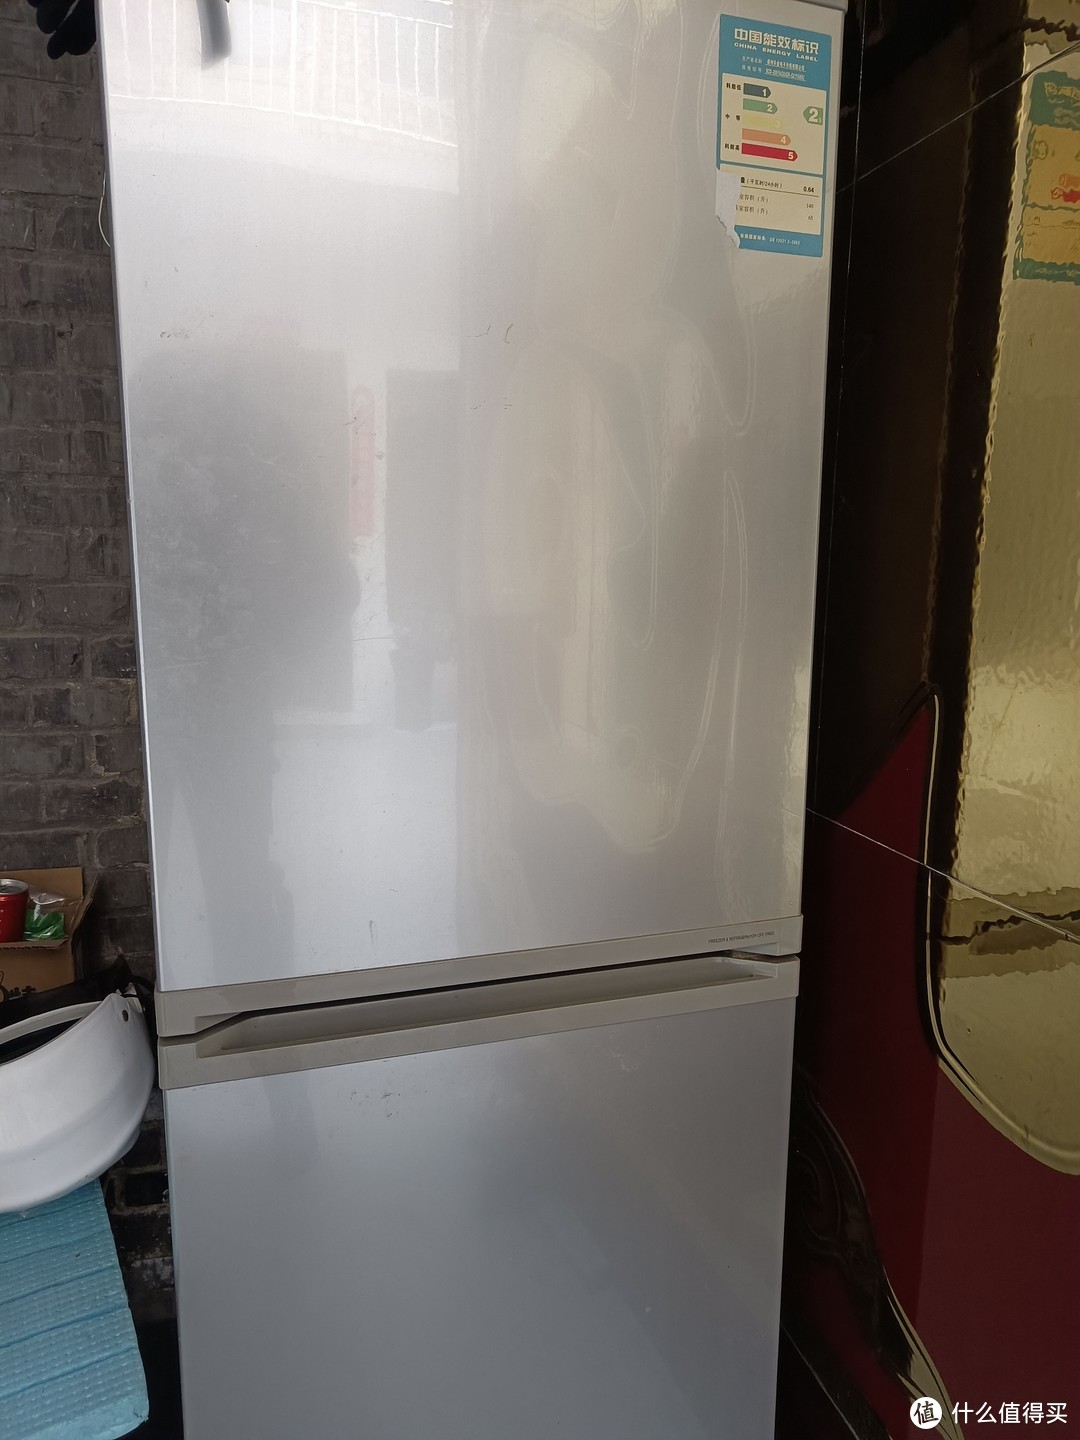 大件的家电的冰箱，当然是实惠又便宜，冰箱本身又大空间又多